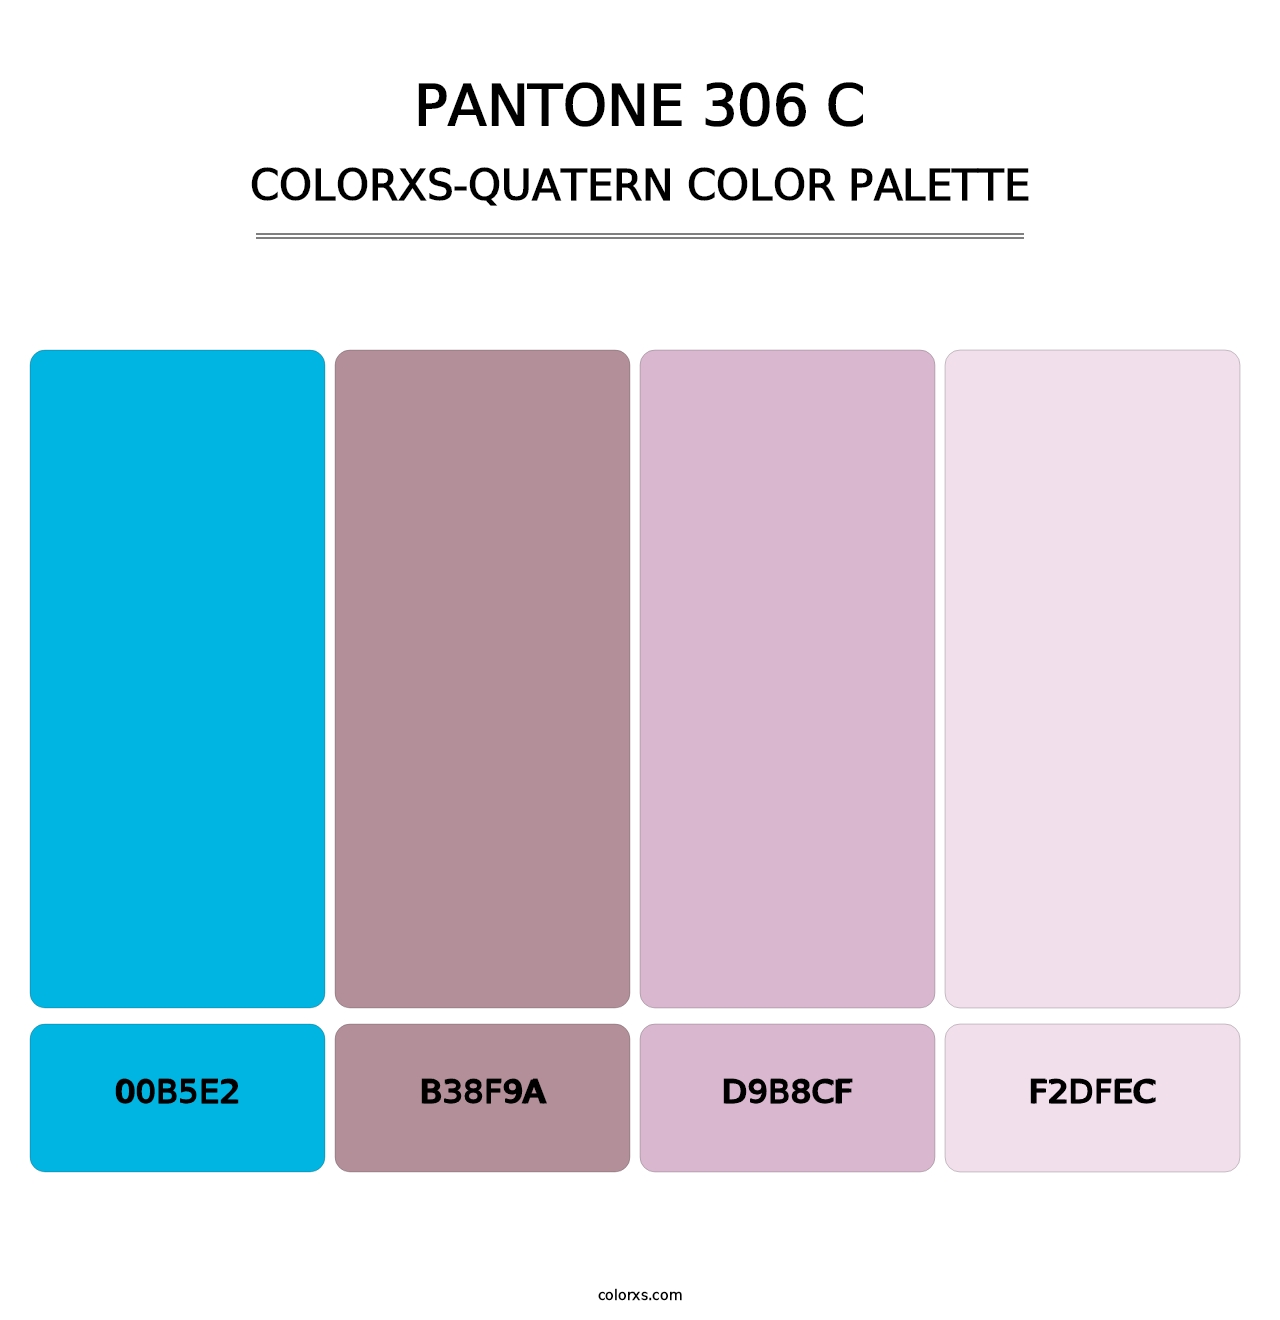 PANTONE 306 C - Colorxs Quatern Palette